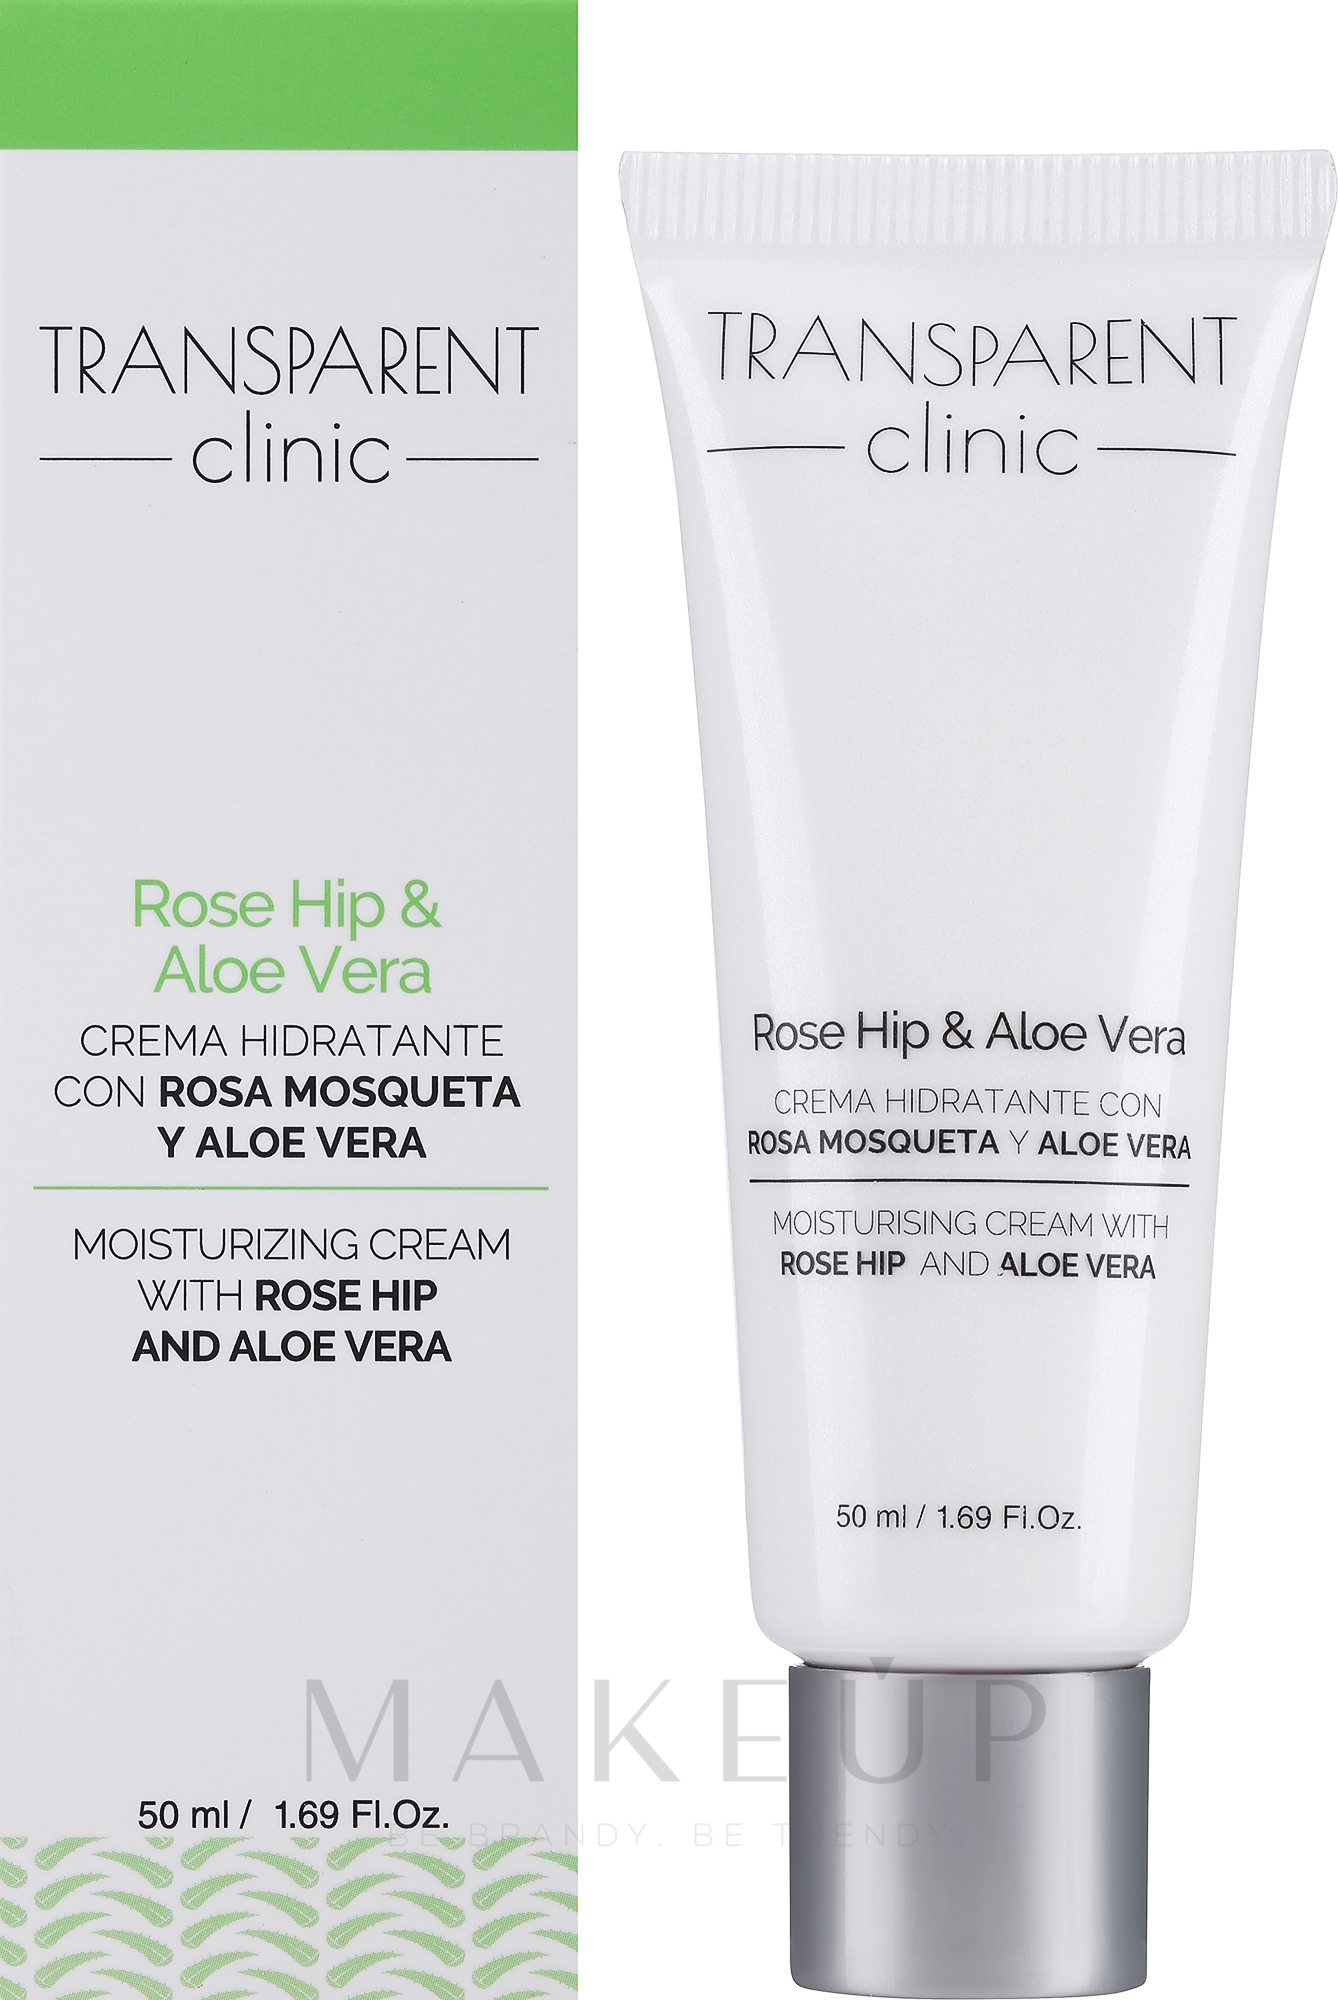 Feuchtigkeitsspendende Gesichtscreme mit Hagebutten und Aloe Vera - Transparent Clinic Rose Hip & Aloe Vera — Bild 50 ml